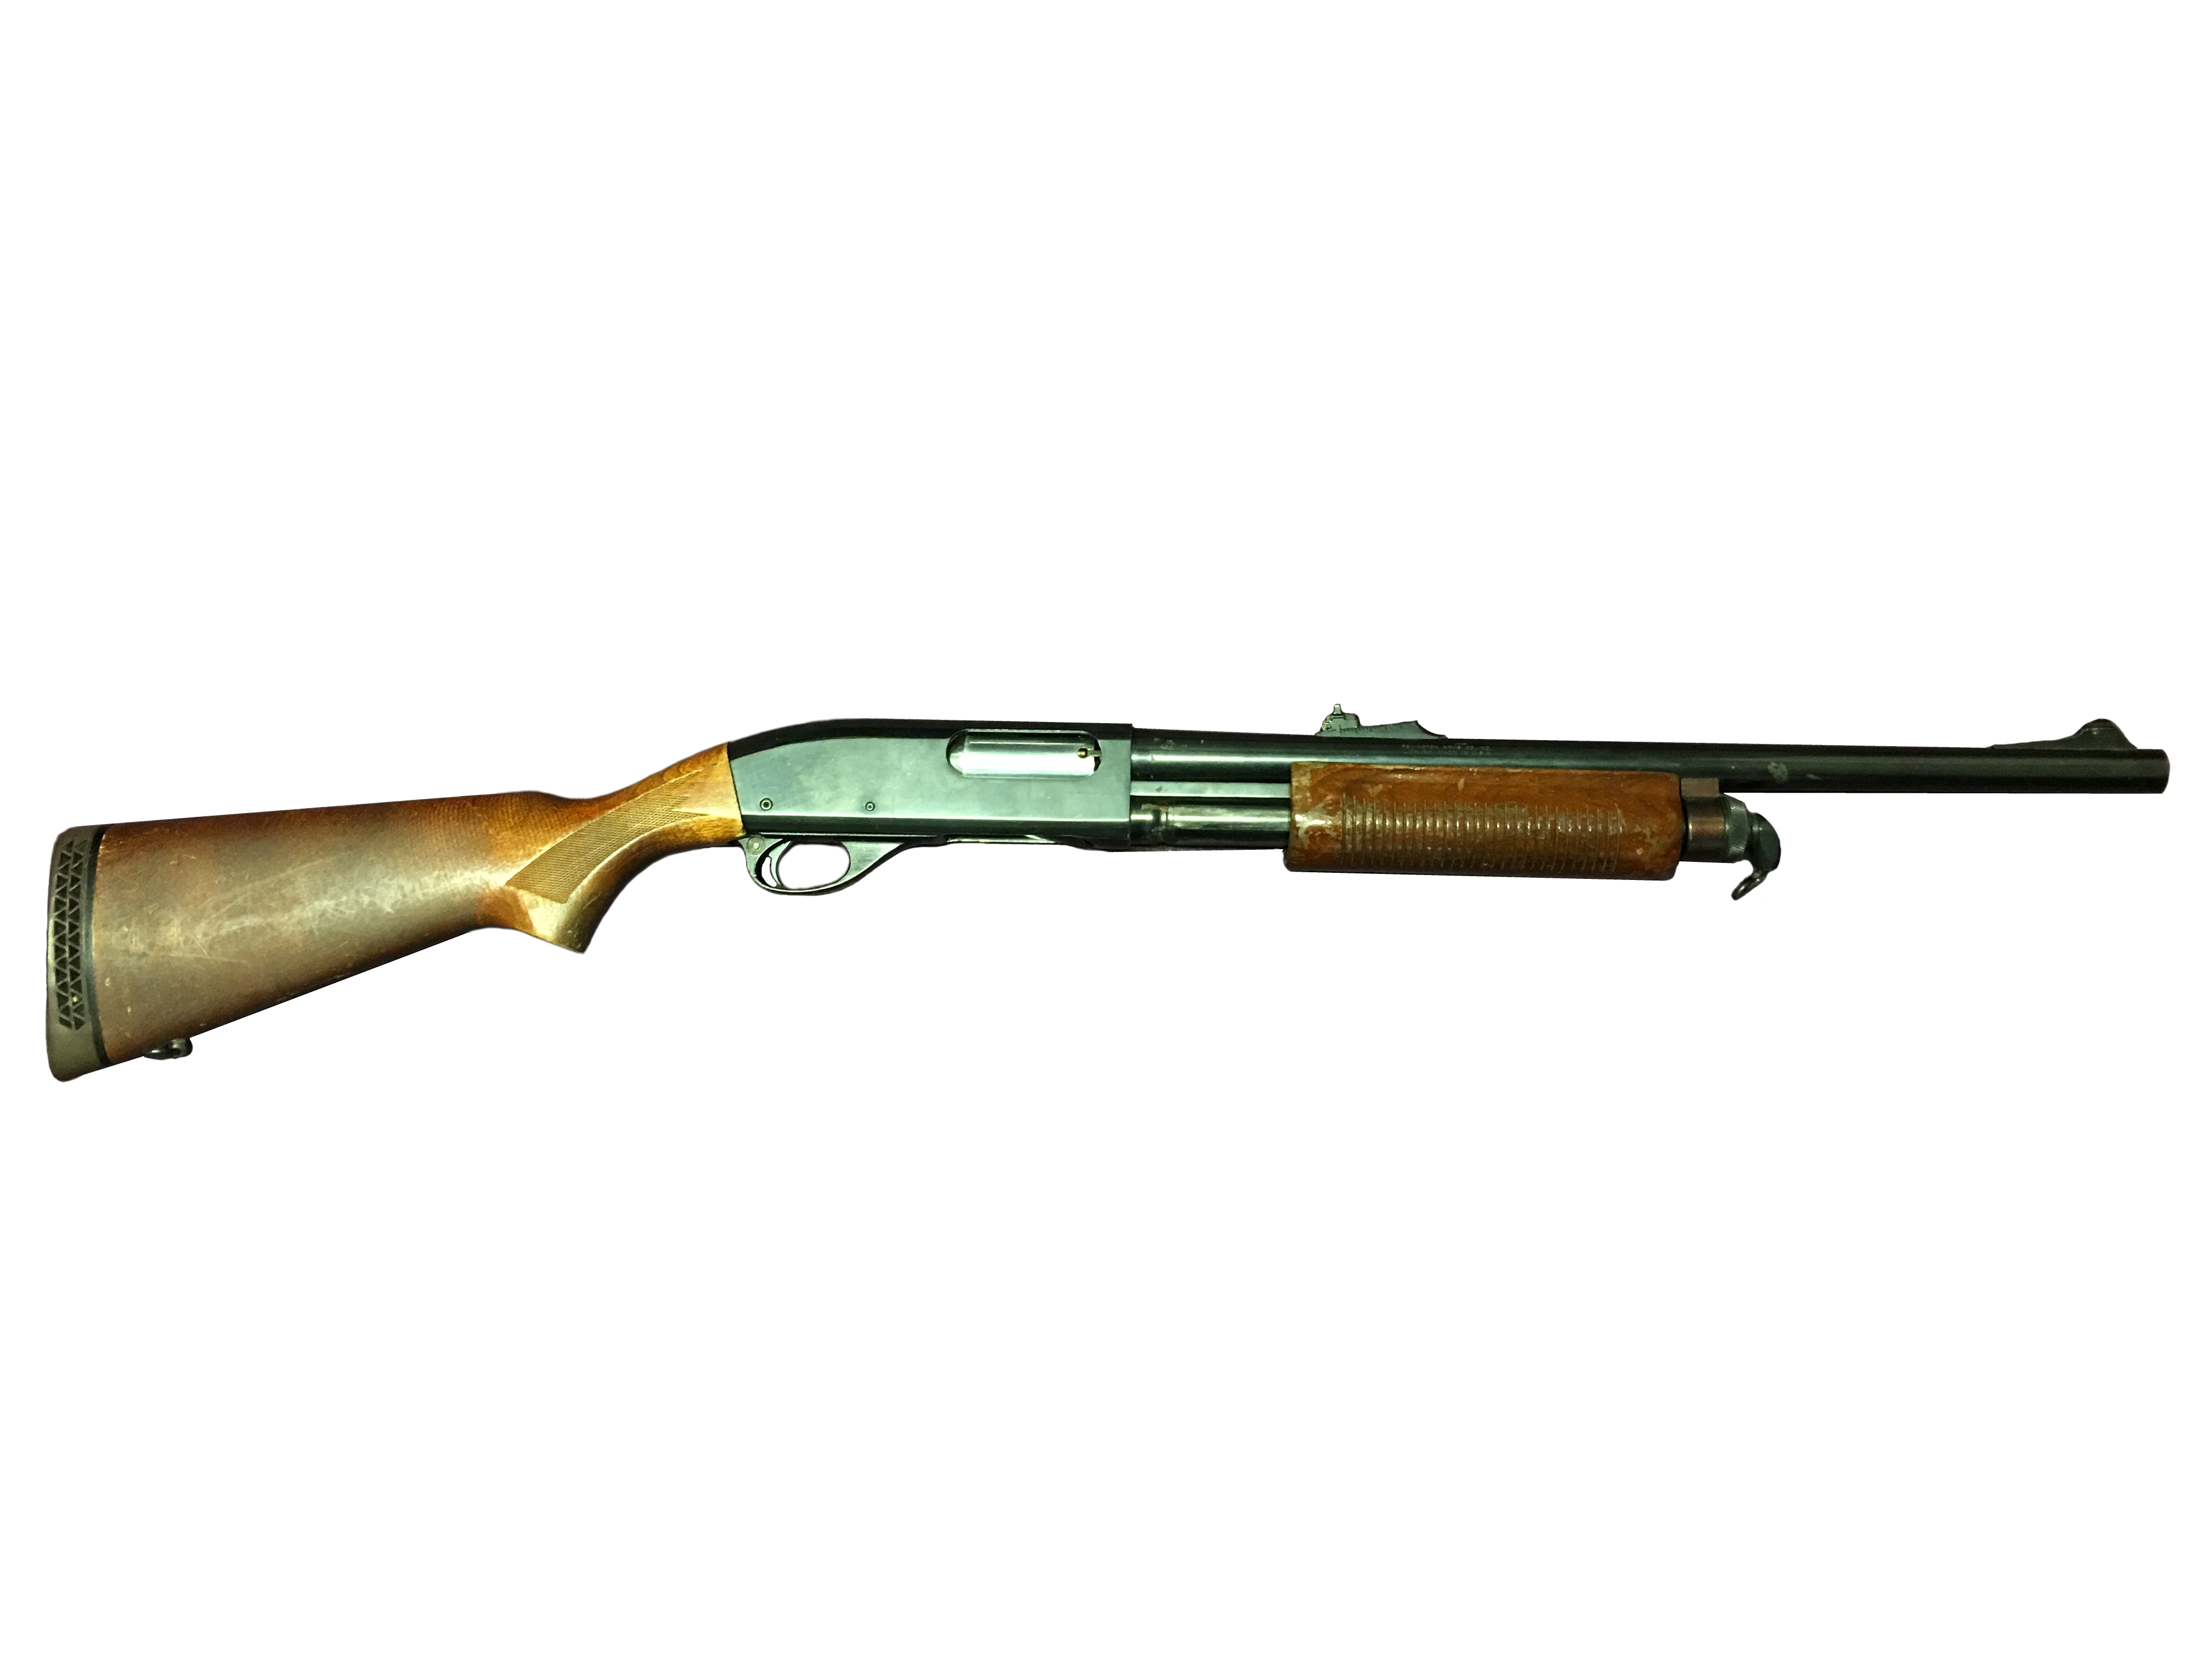 A Remington 870 pump action shot gun with de-activation certificate